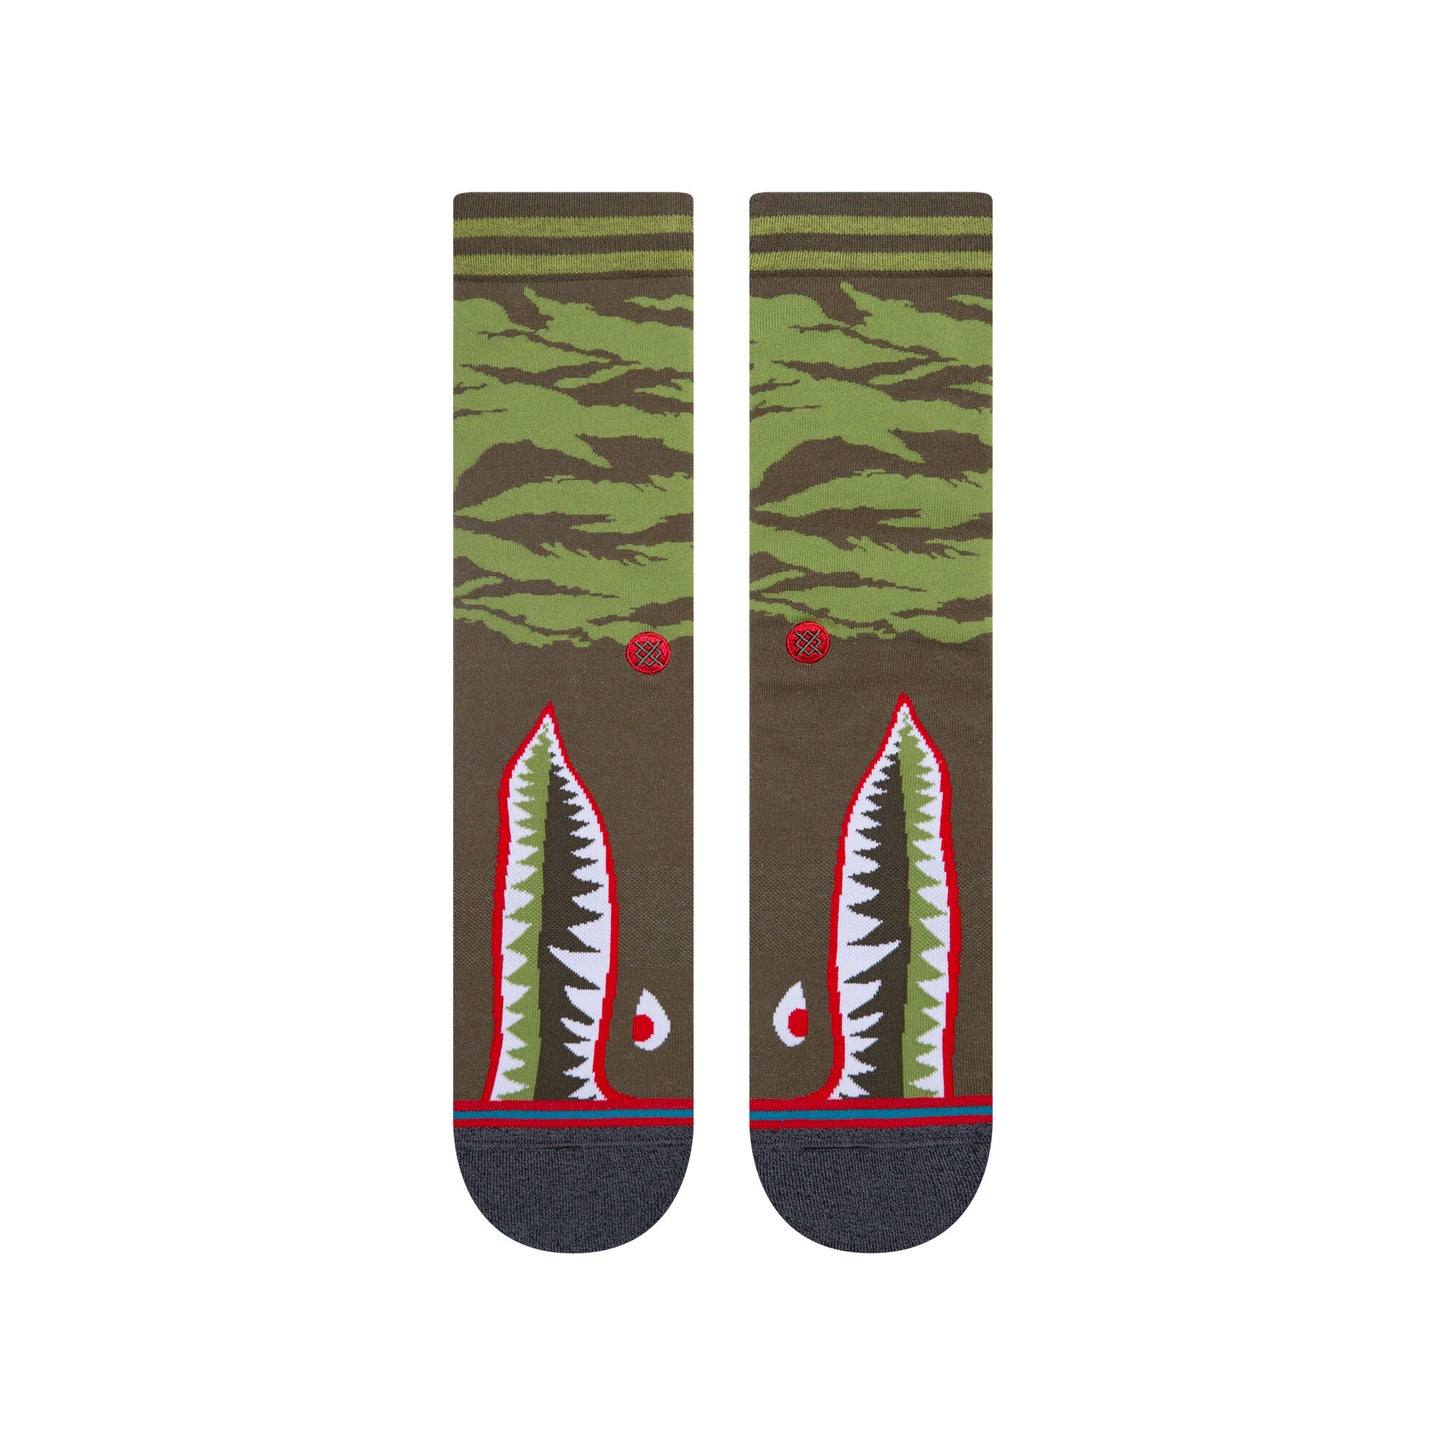 Stance - Warbird Men's Socks, Olive